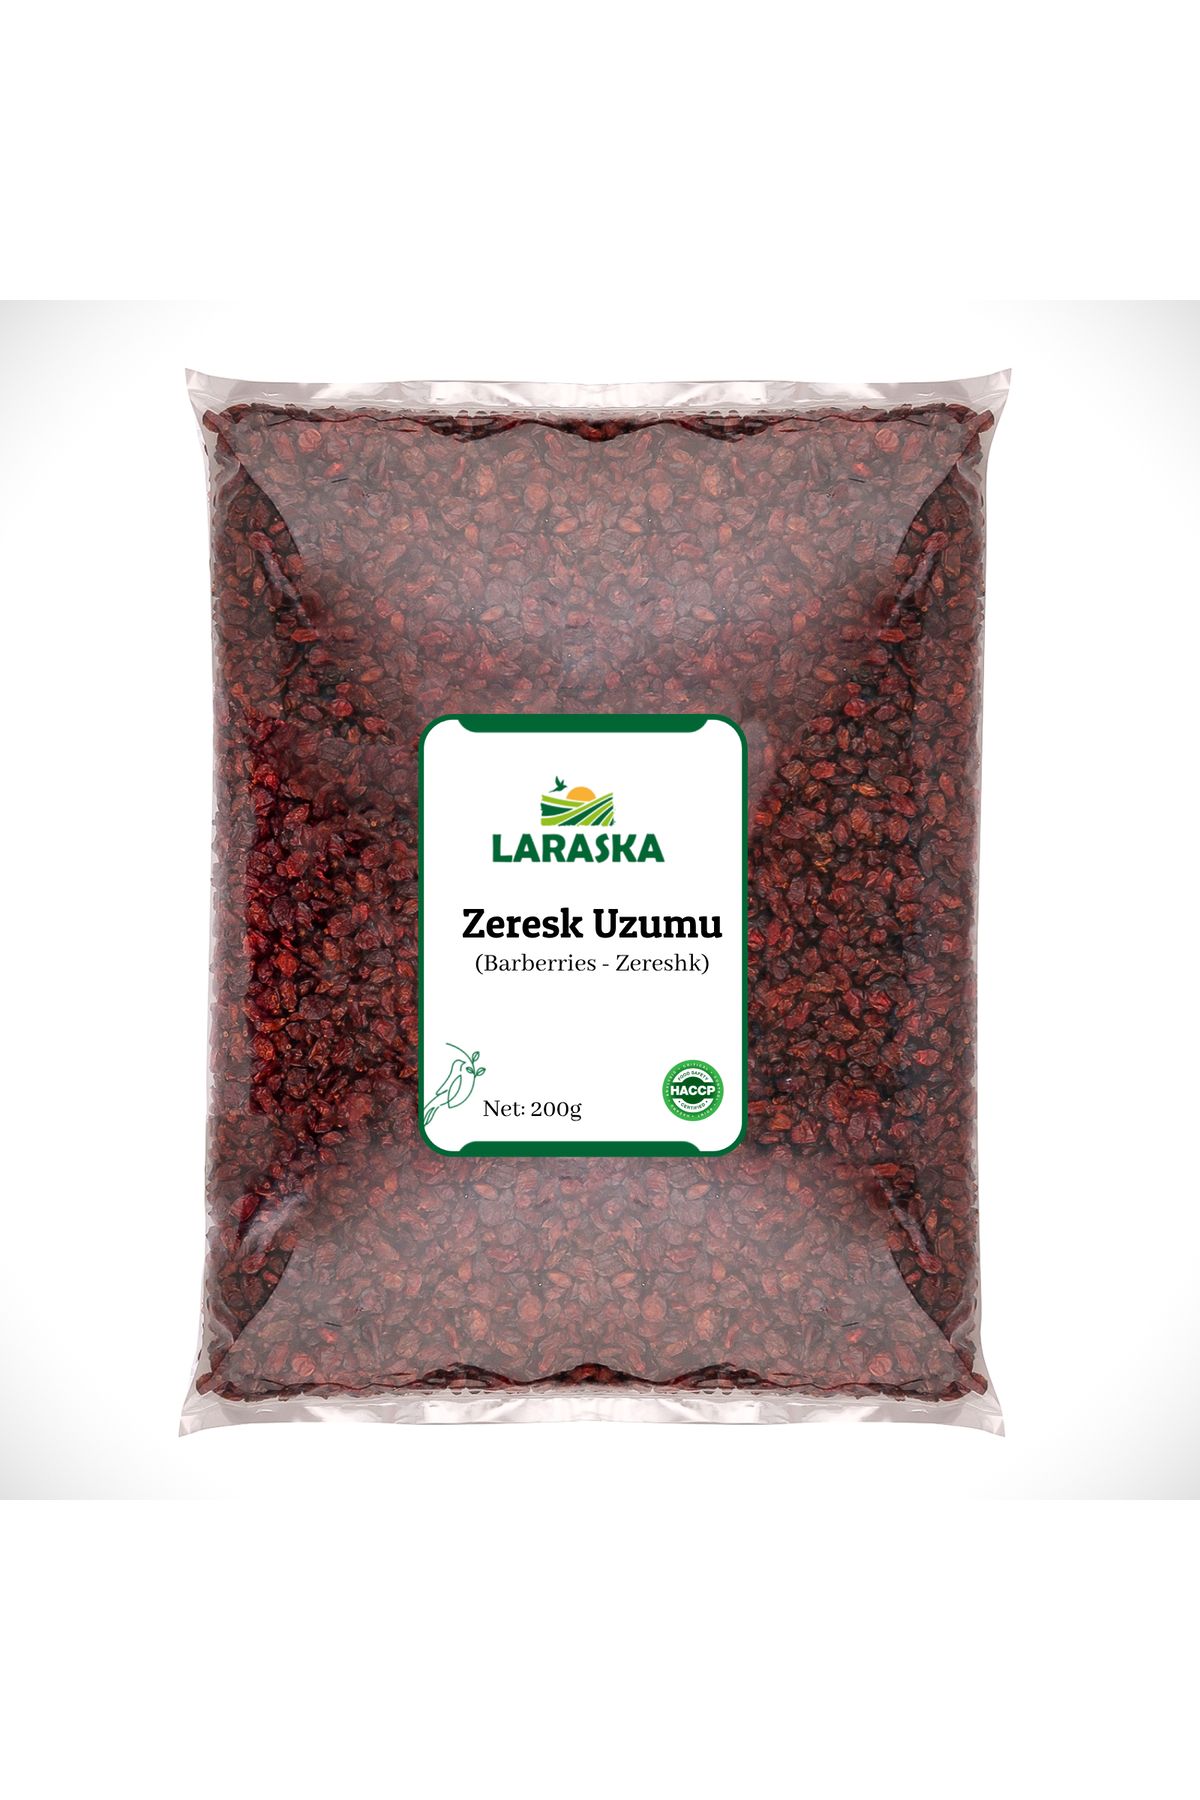 Laraska Kuru Zereşk (barberries) 200g Yeni Mahsül 1. Kalite Iran Üzümü Zereshk